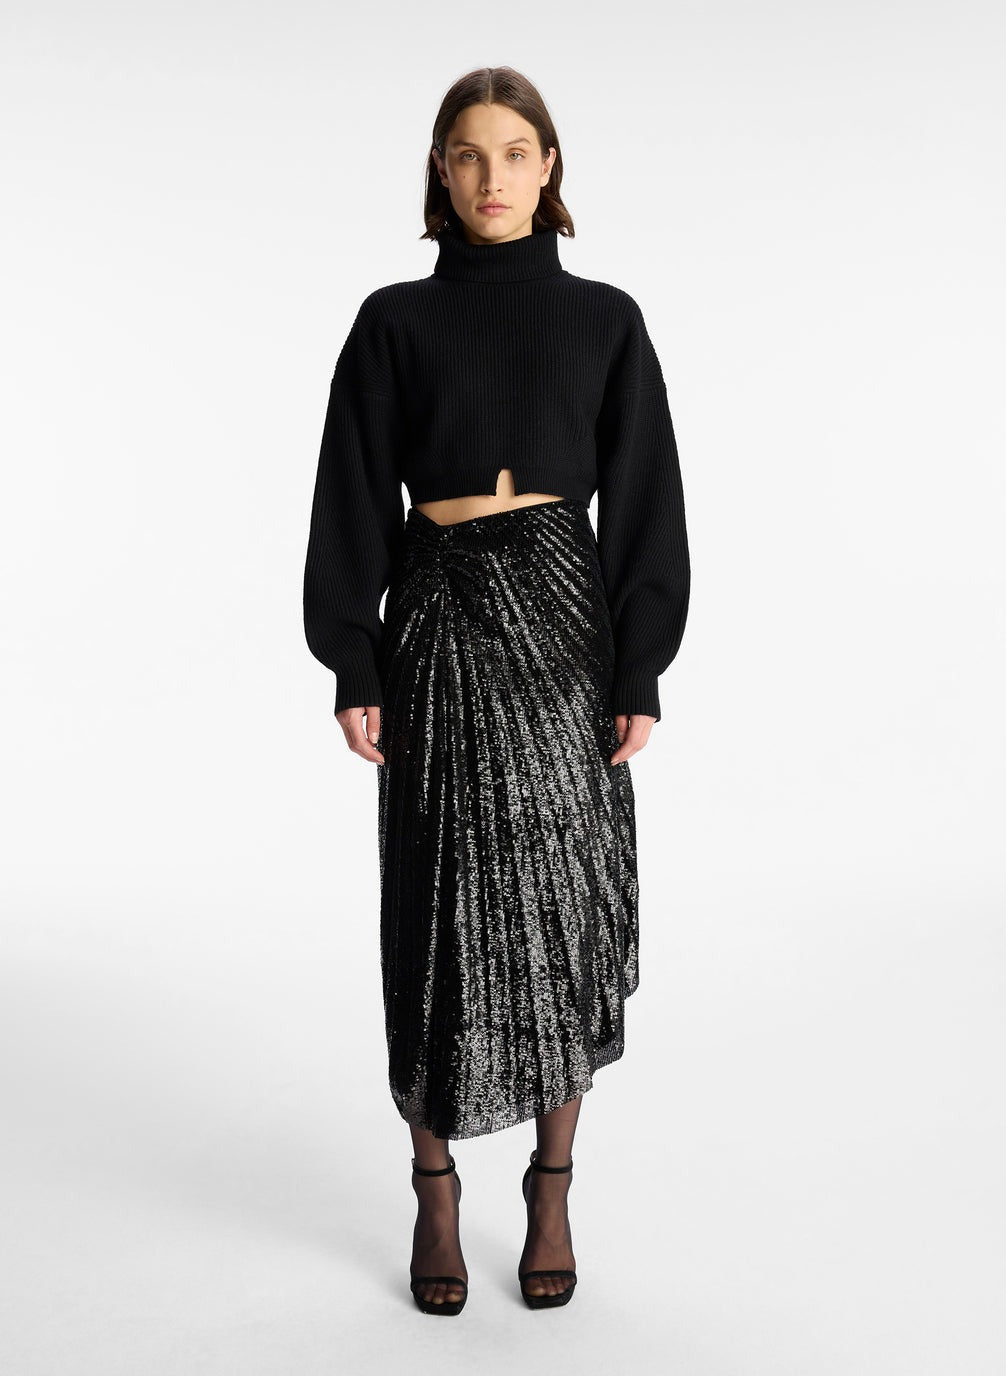 Tori Skirt in Black sequin